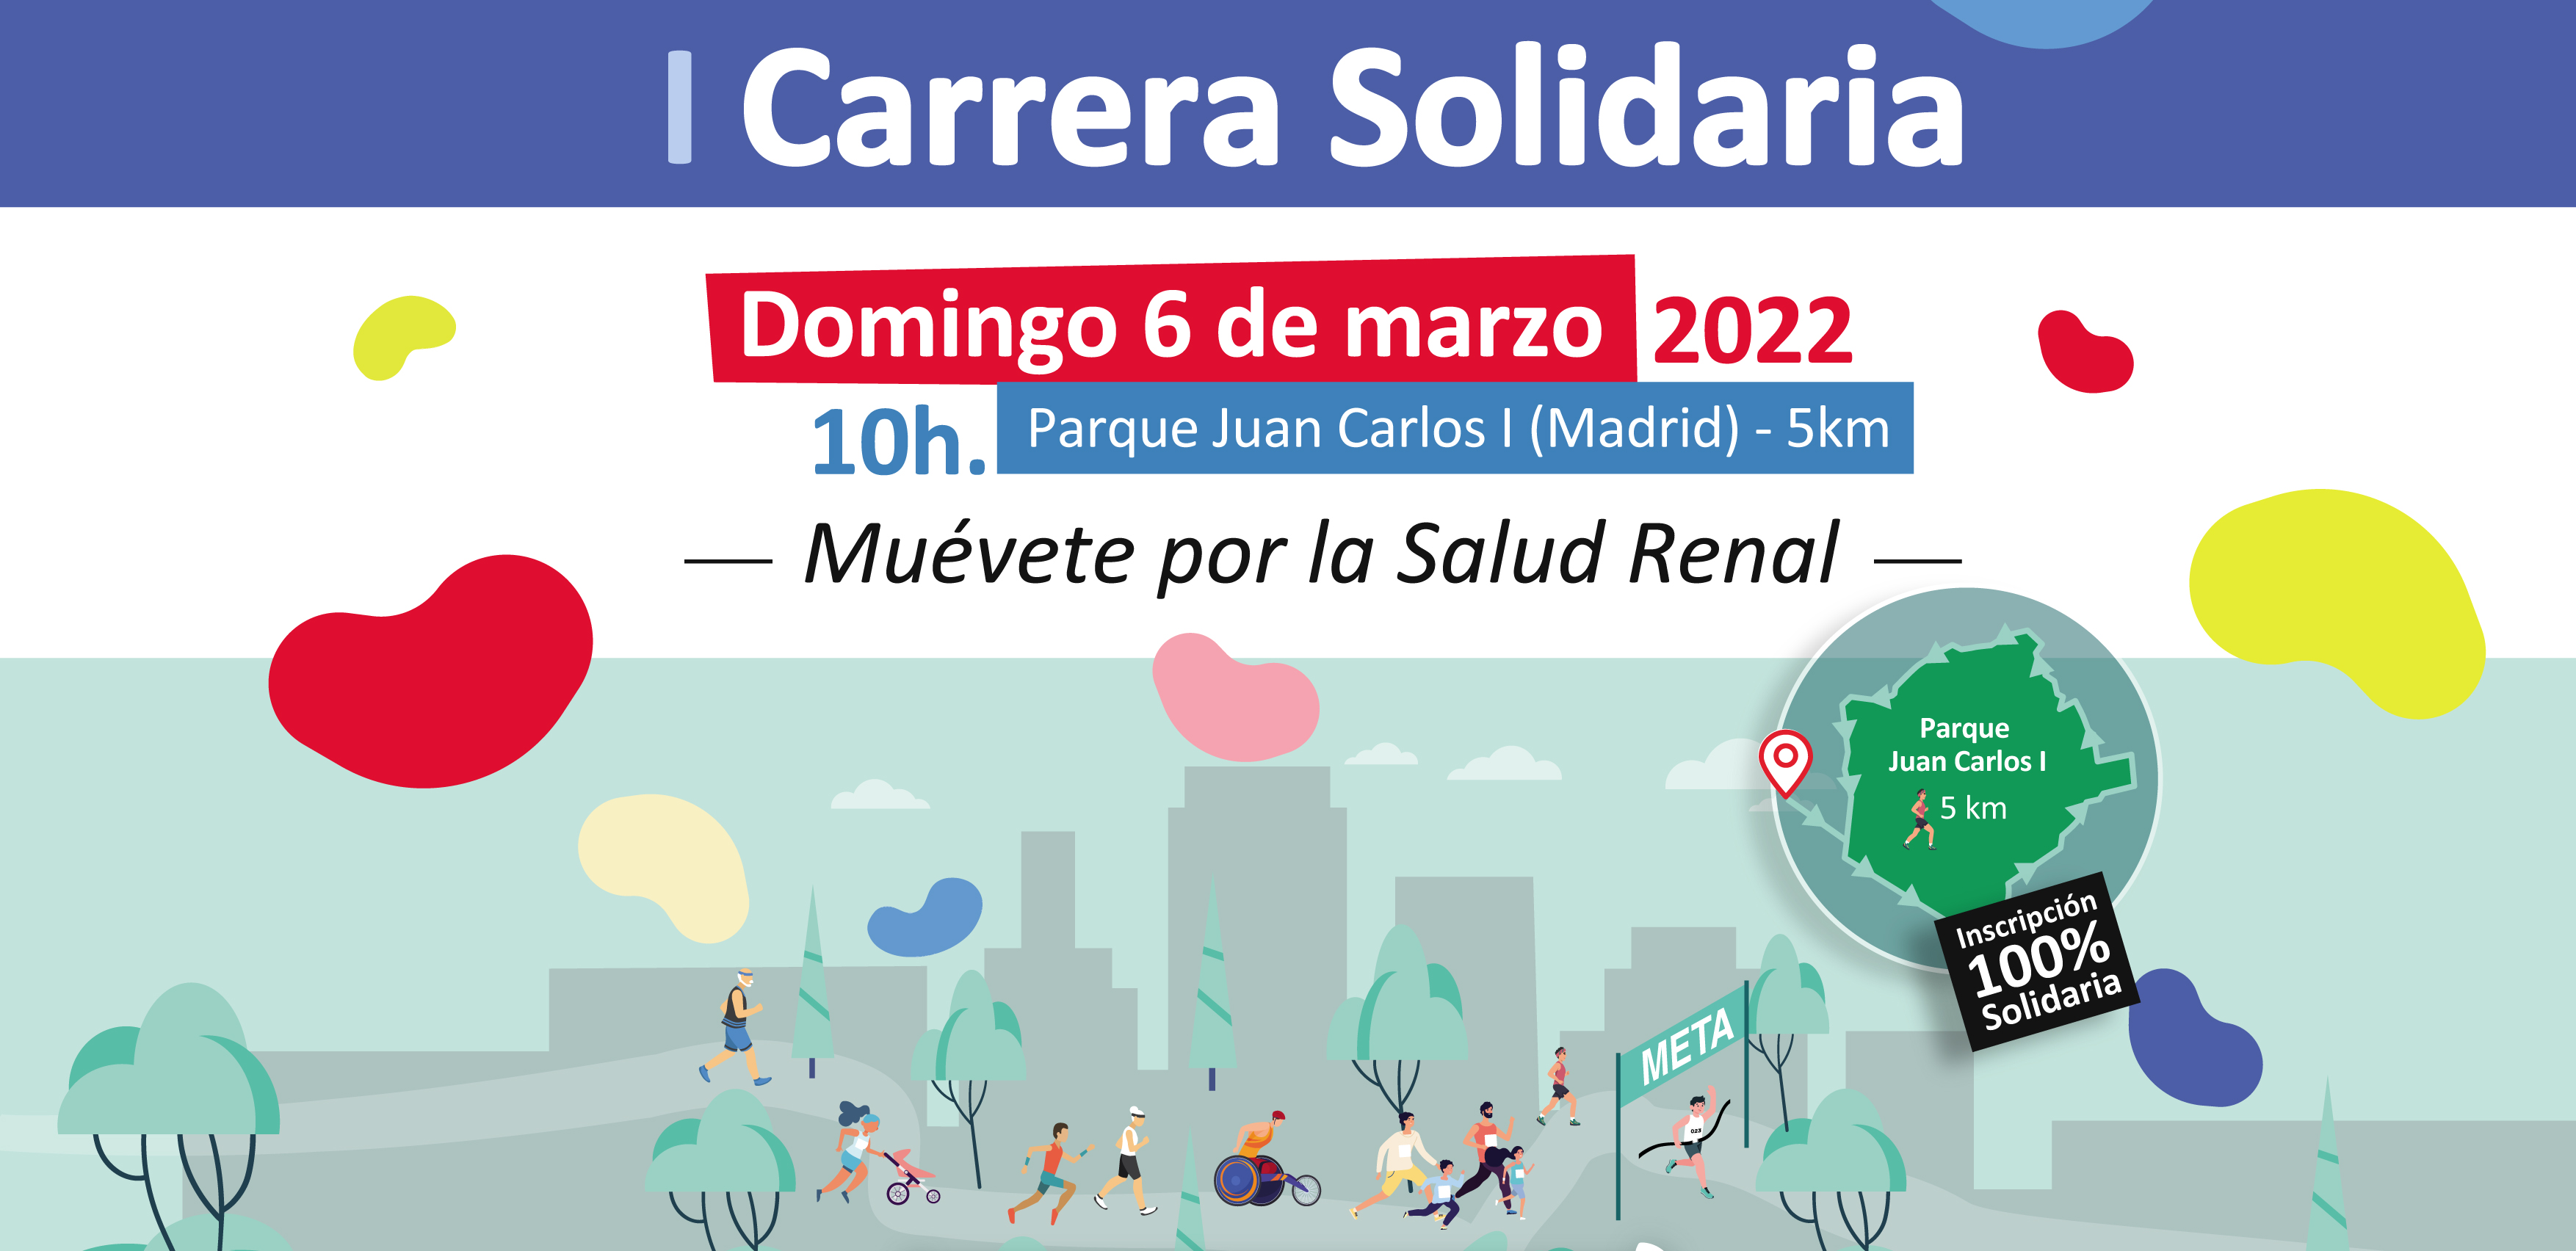 Convocatoria - Madrid acoge mañana domingo (10.00h) la “I Carrera Solidaria por la Salud Renal”, en la que unos 400 deportistas y pacientes renales participarán para sensibilizar sobre la enfermedad renal crónica y apoyar a los afectados 